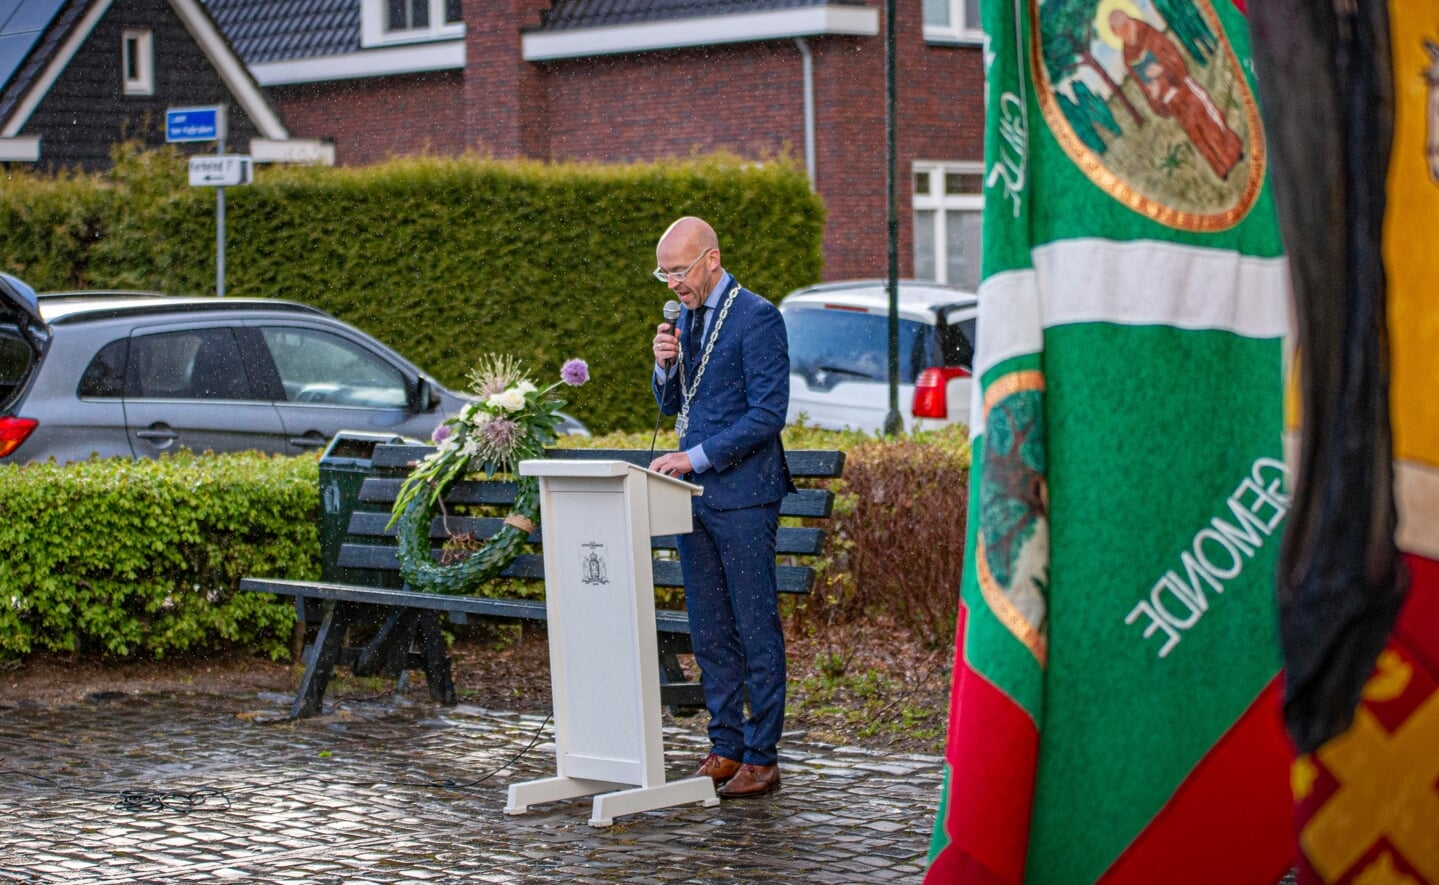 Burgemeester Han Looijen van Sint-Michielsgestel sprak enkele woorden bij de herdenking in Gemonde. 